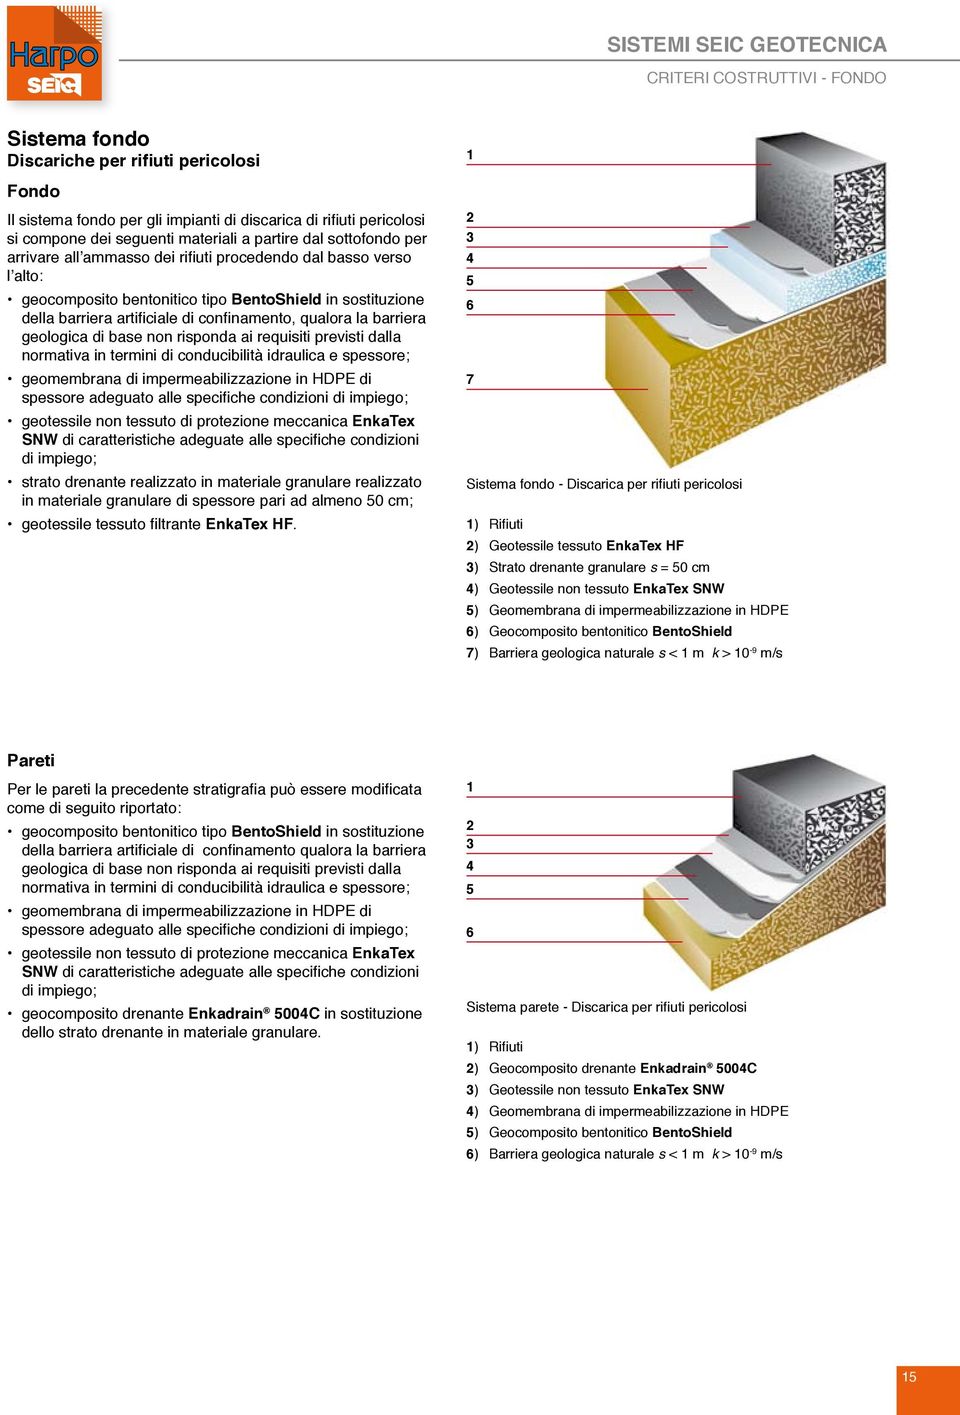 barriera geologica di base non risponda ai requisiti previsti dalla normativa in termini di conducibilità idraulica e spessore; geomembrana di impermeabilizzazione in HDPE di spessore adeguato alle